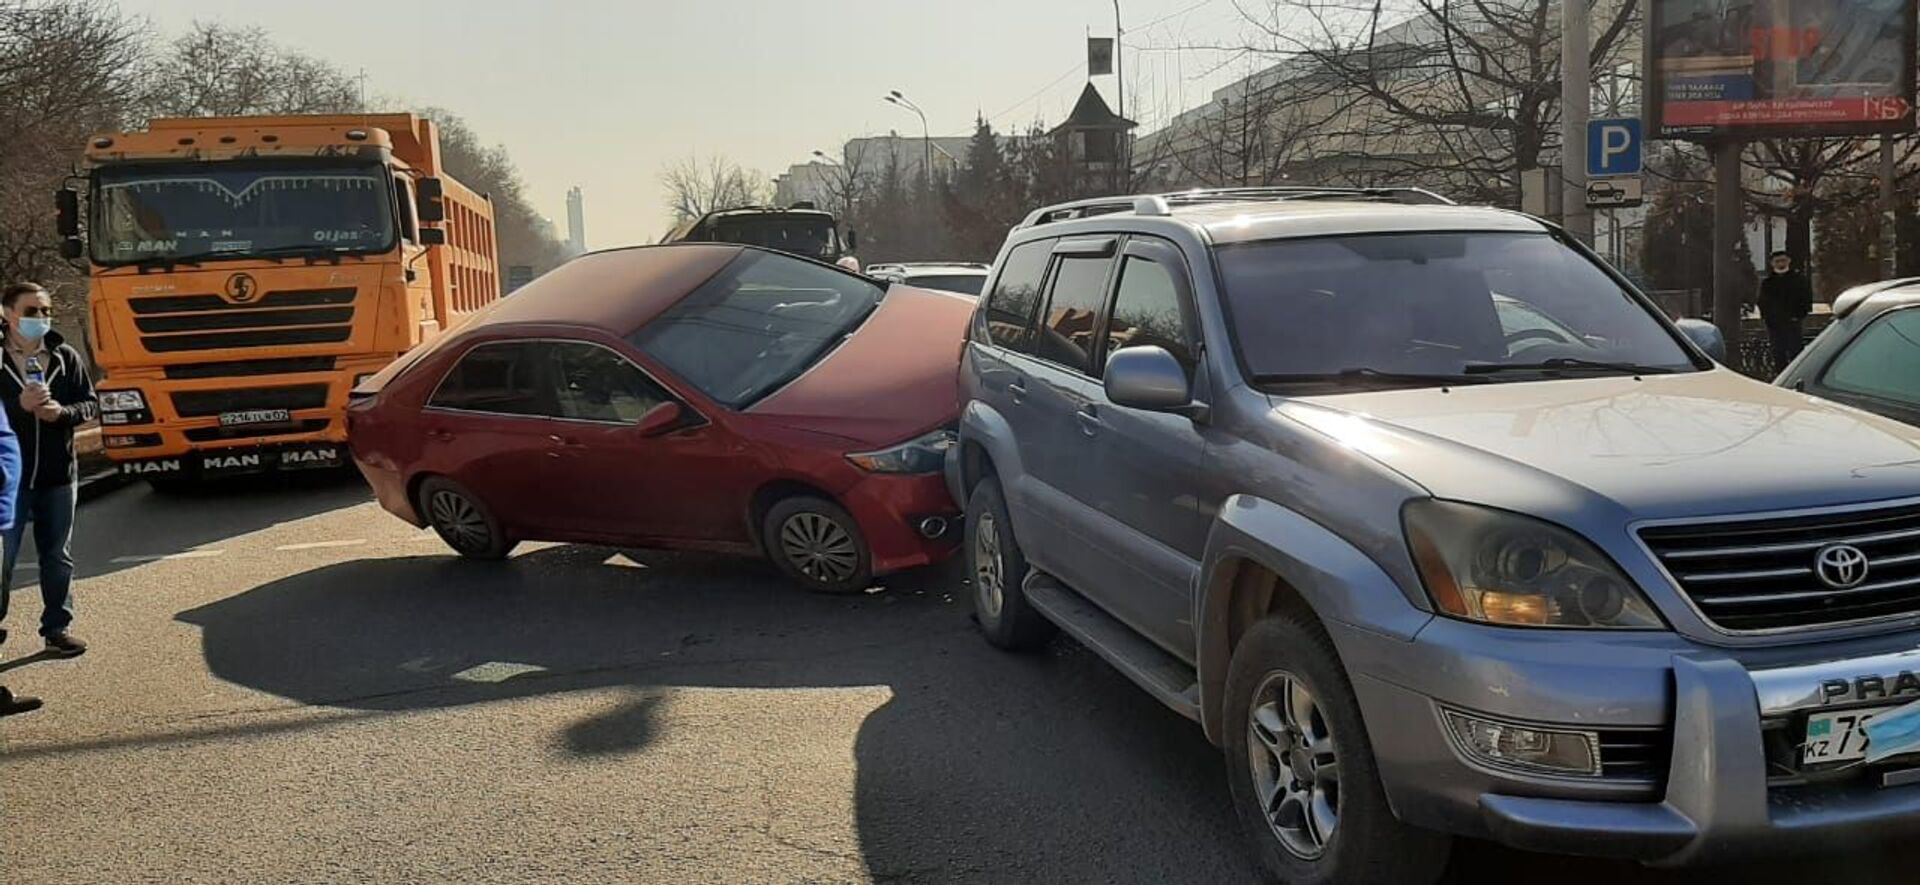 Авто запрыгнуло на другую машину: массовое ДТП с грузовиком произошло в Алматы - Sputnik Казахстан, 1920, 18.02.2021